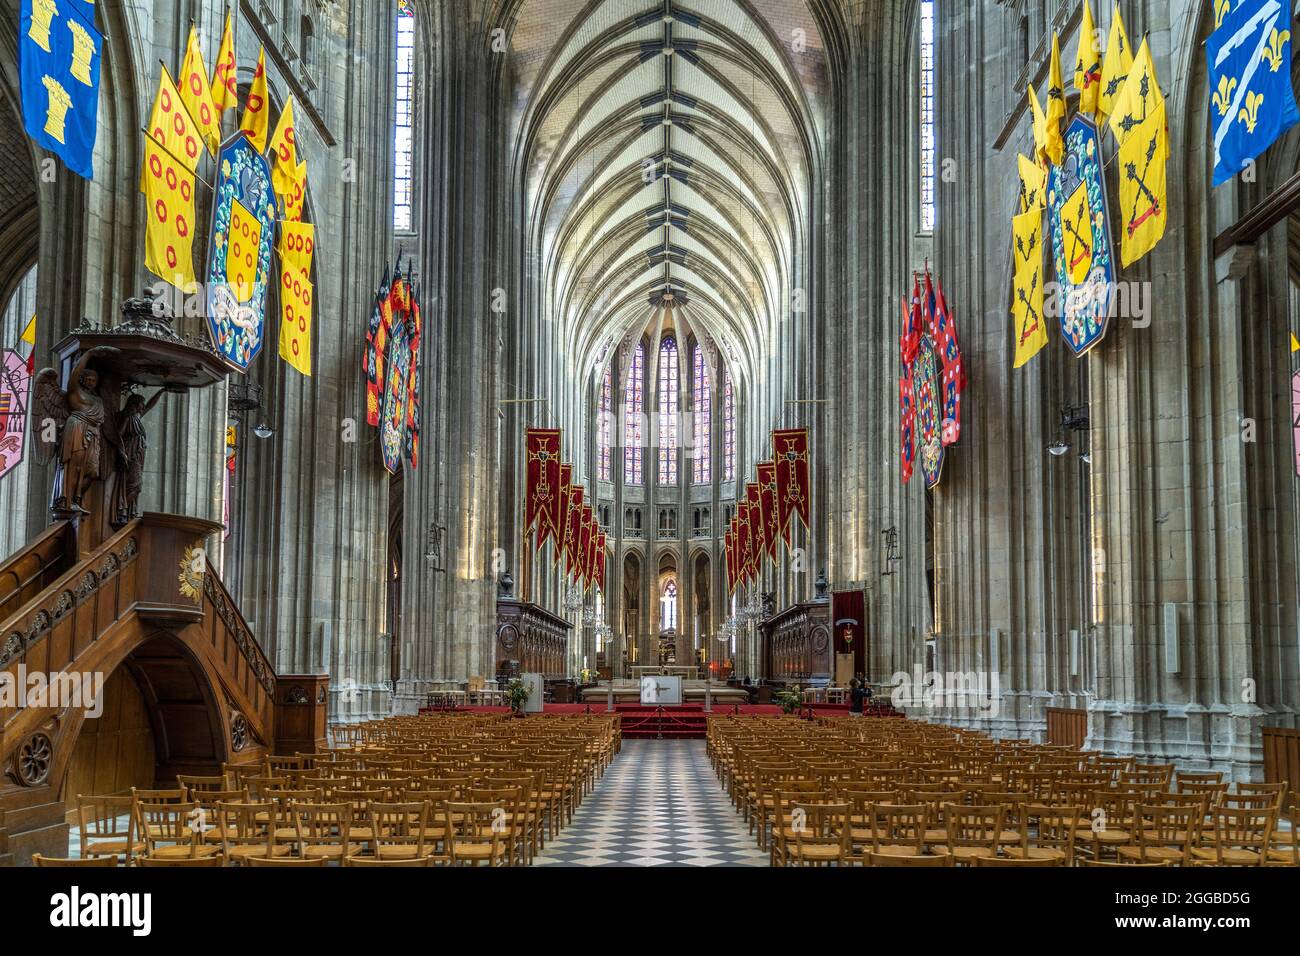 Innenraum der Kathedrale Sainte-Croix Orleans, Frankreich | interno della cattedrale di Sainte-Croix, Orleans, Francia Foto Stock